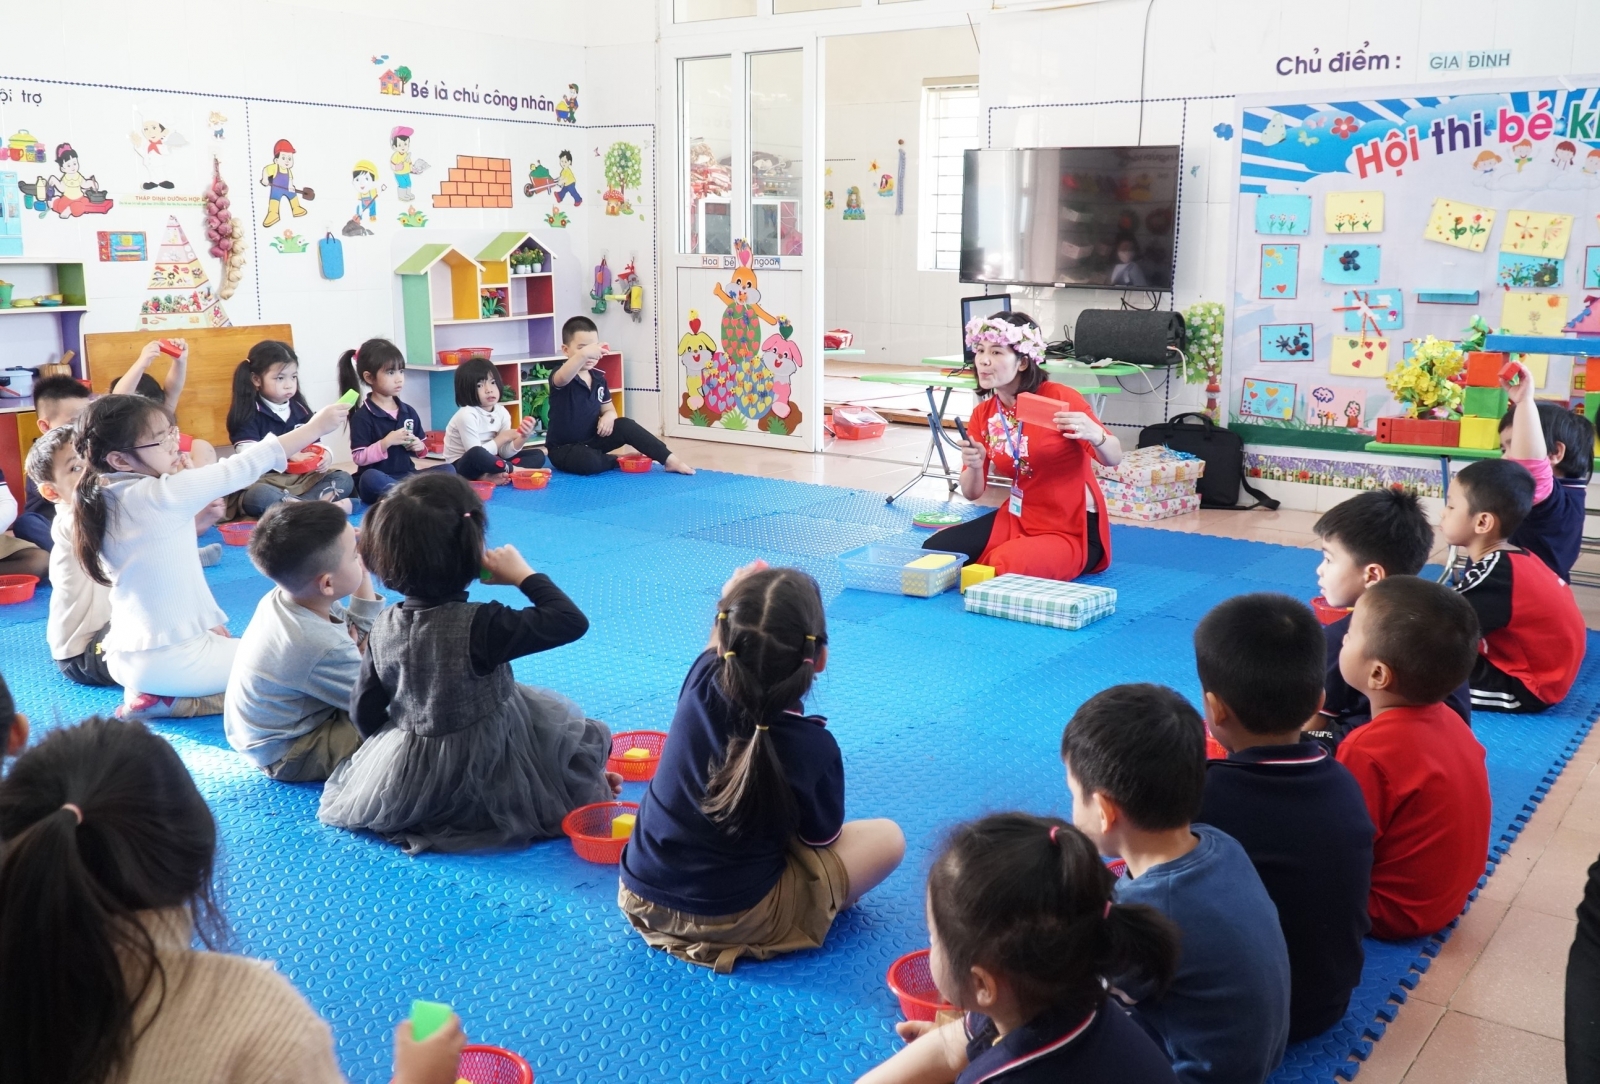 Nghệ An: 320 giáo viên Mầm non được công nhận dạy giỏi cấp tỉnh - Ảnh minh hoạ 2